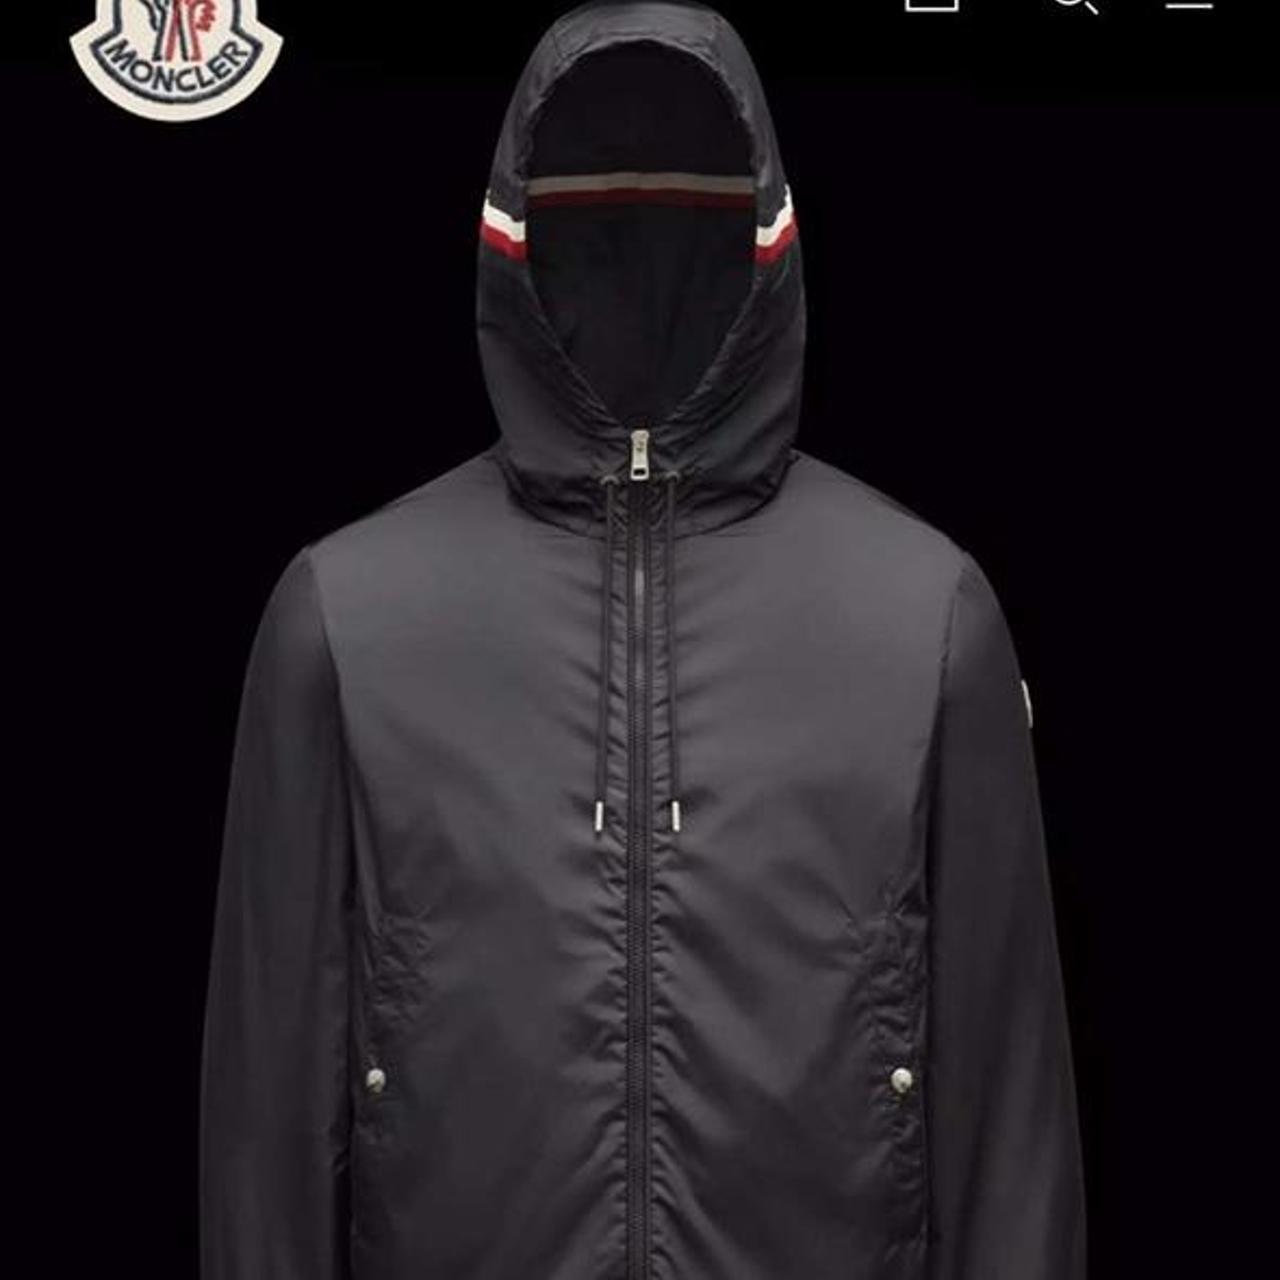 Authentic Moncler grim peurs hooded jacket Size XS-... - Depop